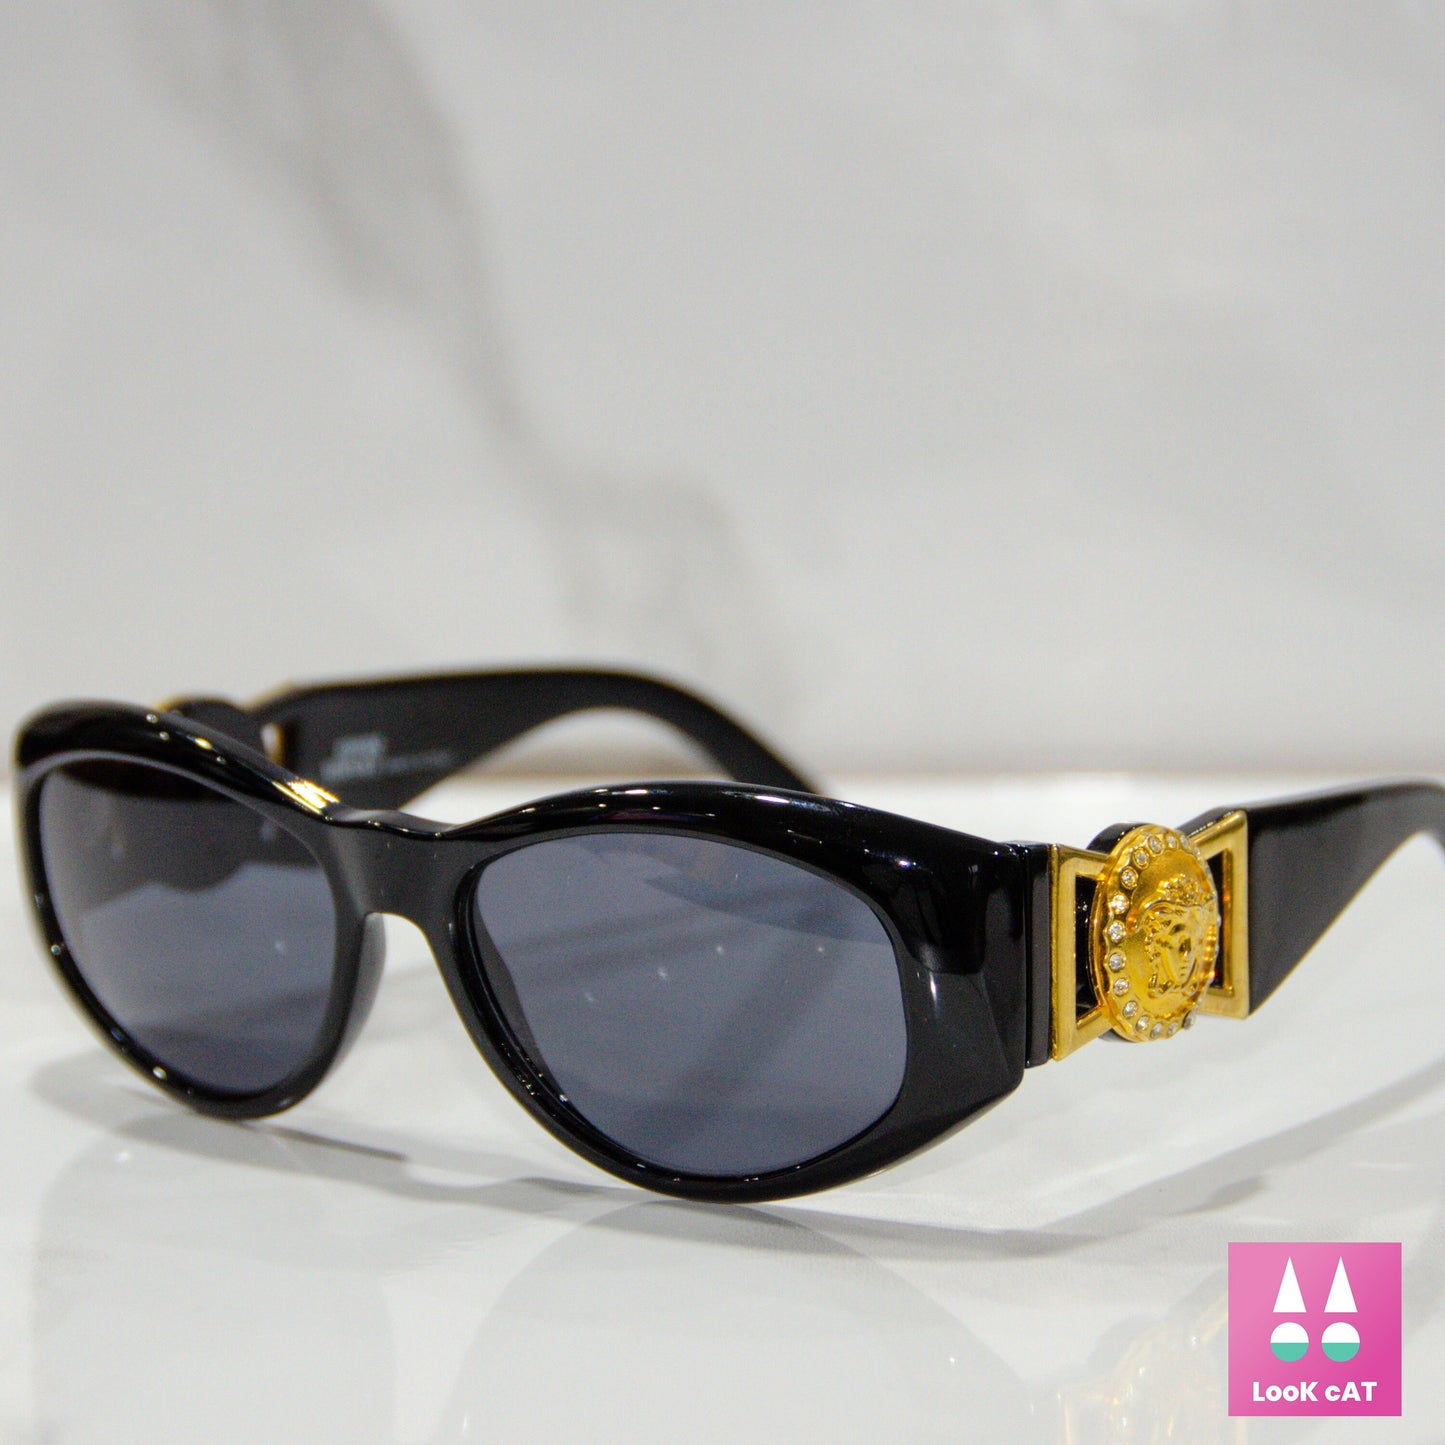 Occhiali da sole Gianni Versace mod 424 strass lunette brille occhiali sole gafas